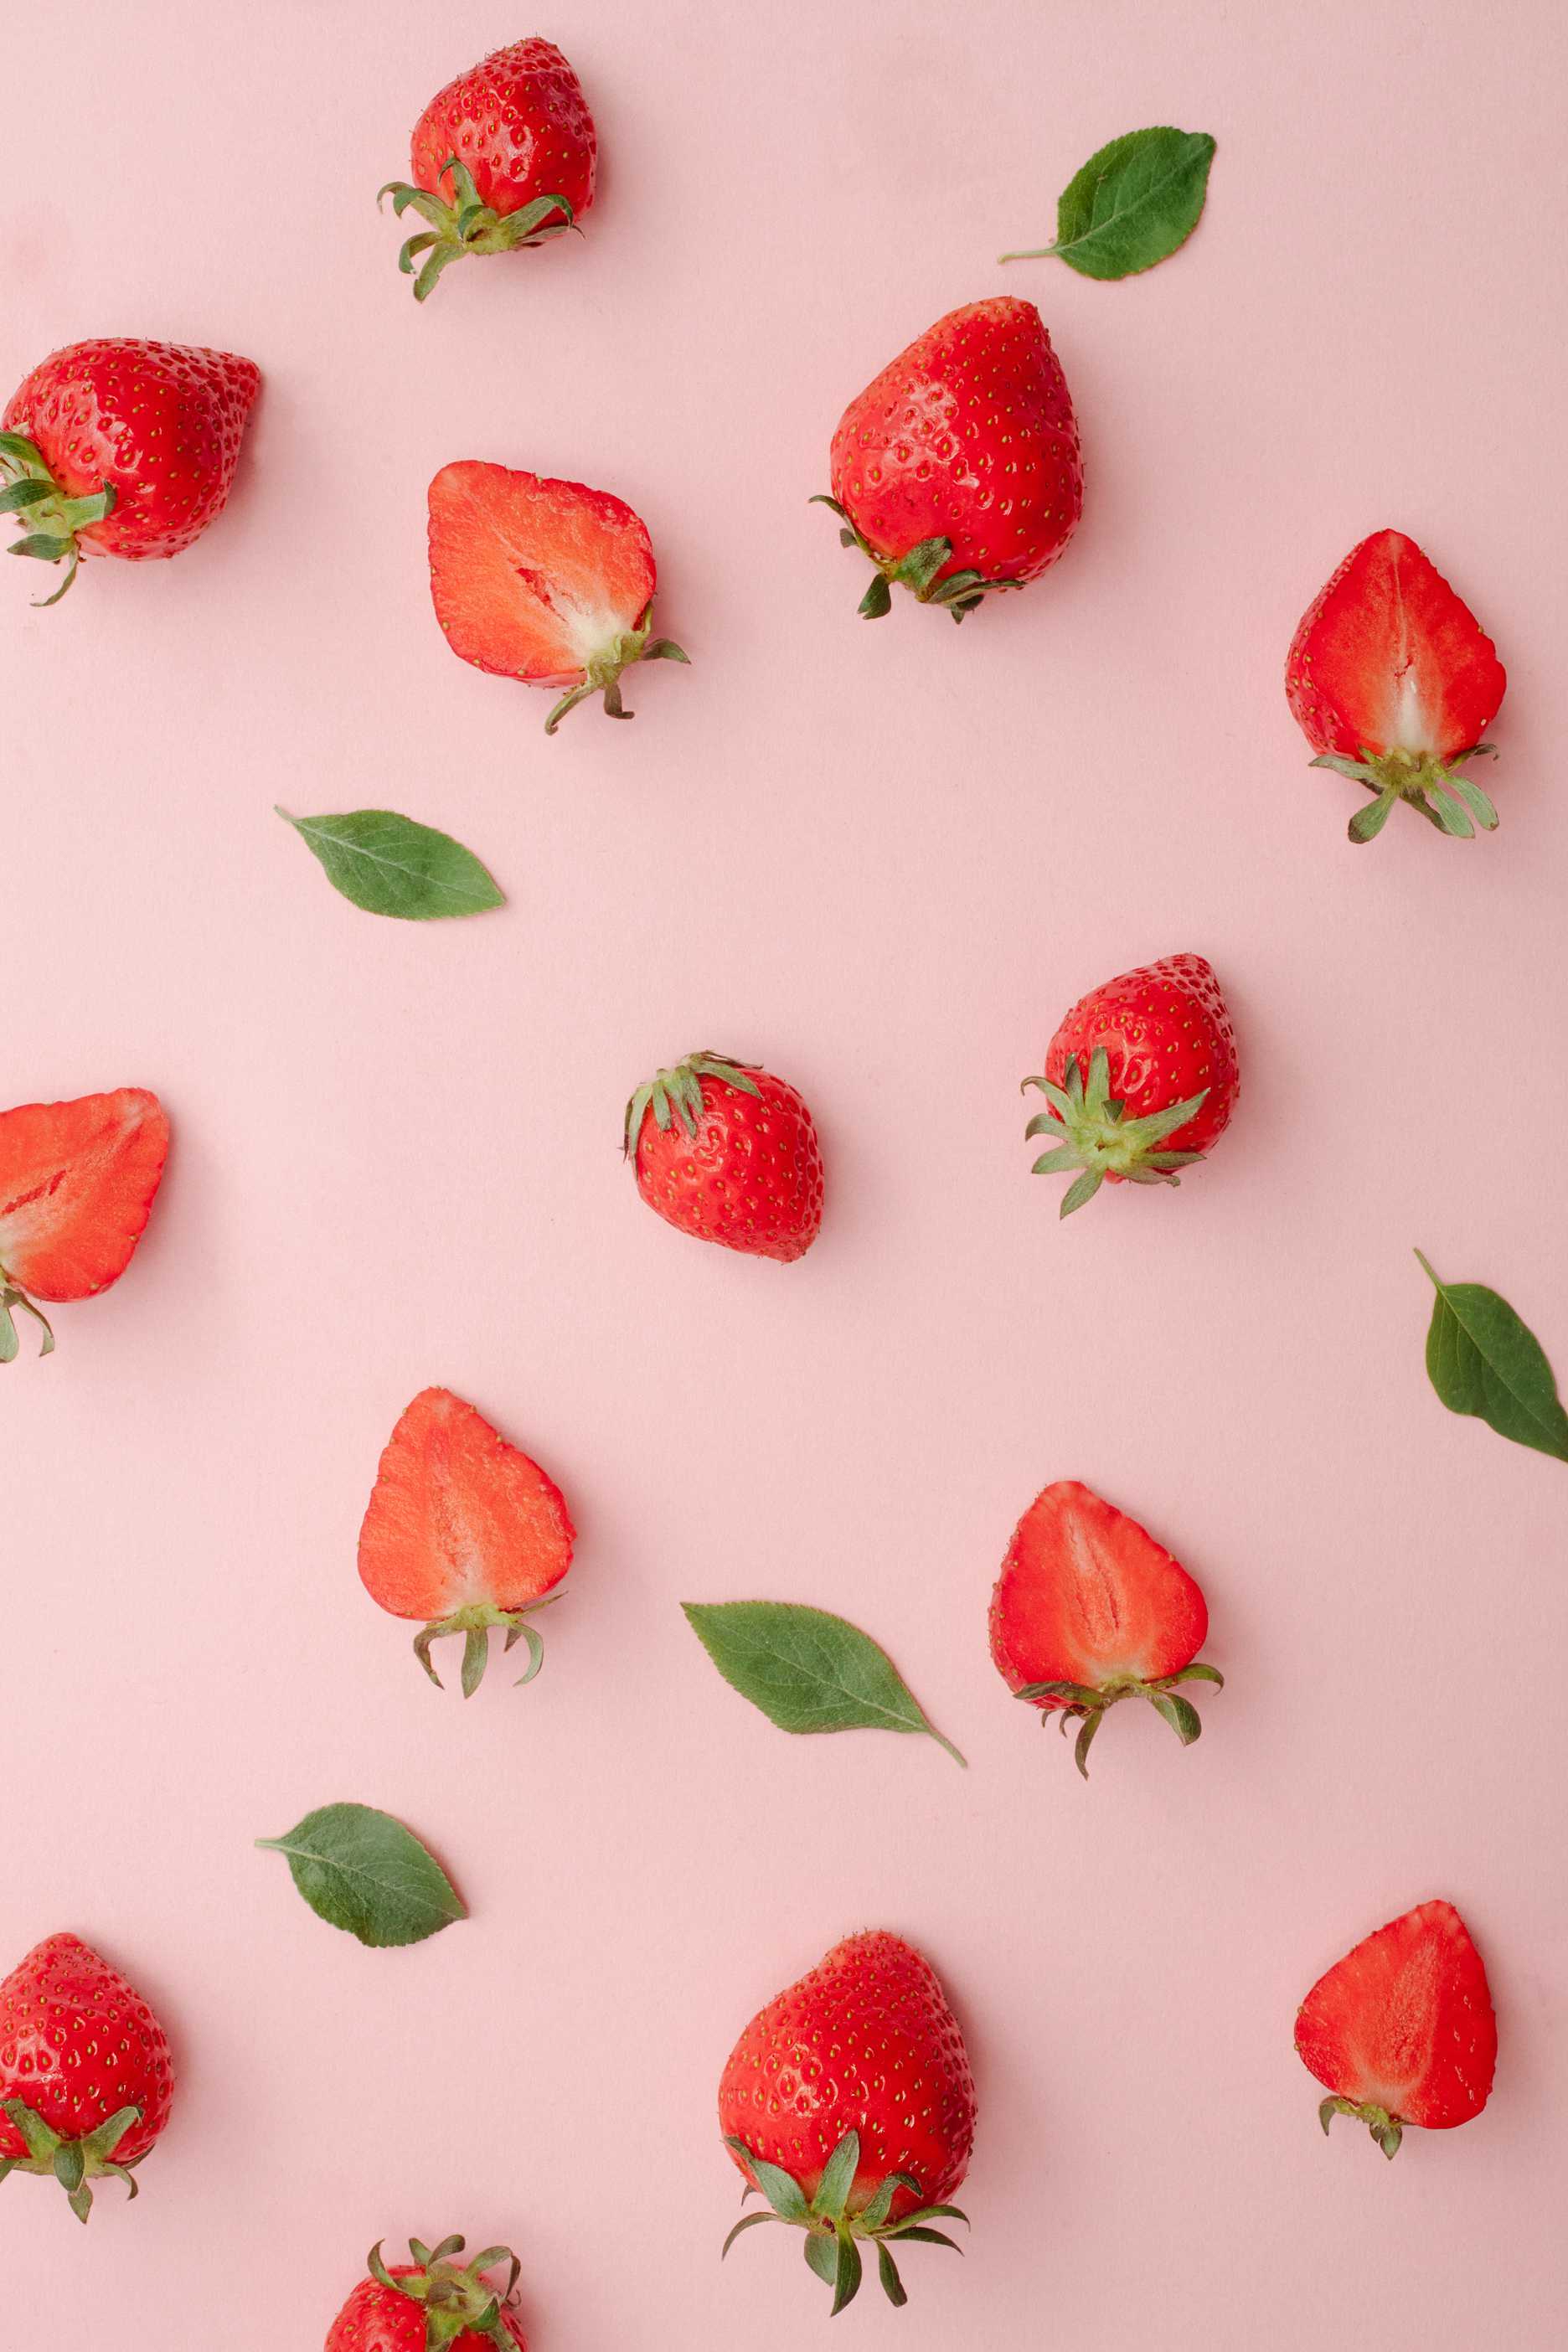 microsoft, preguntar a un profesional en nutrición: ¿son saludables las fresas?